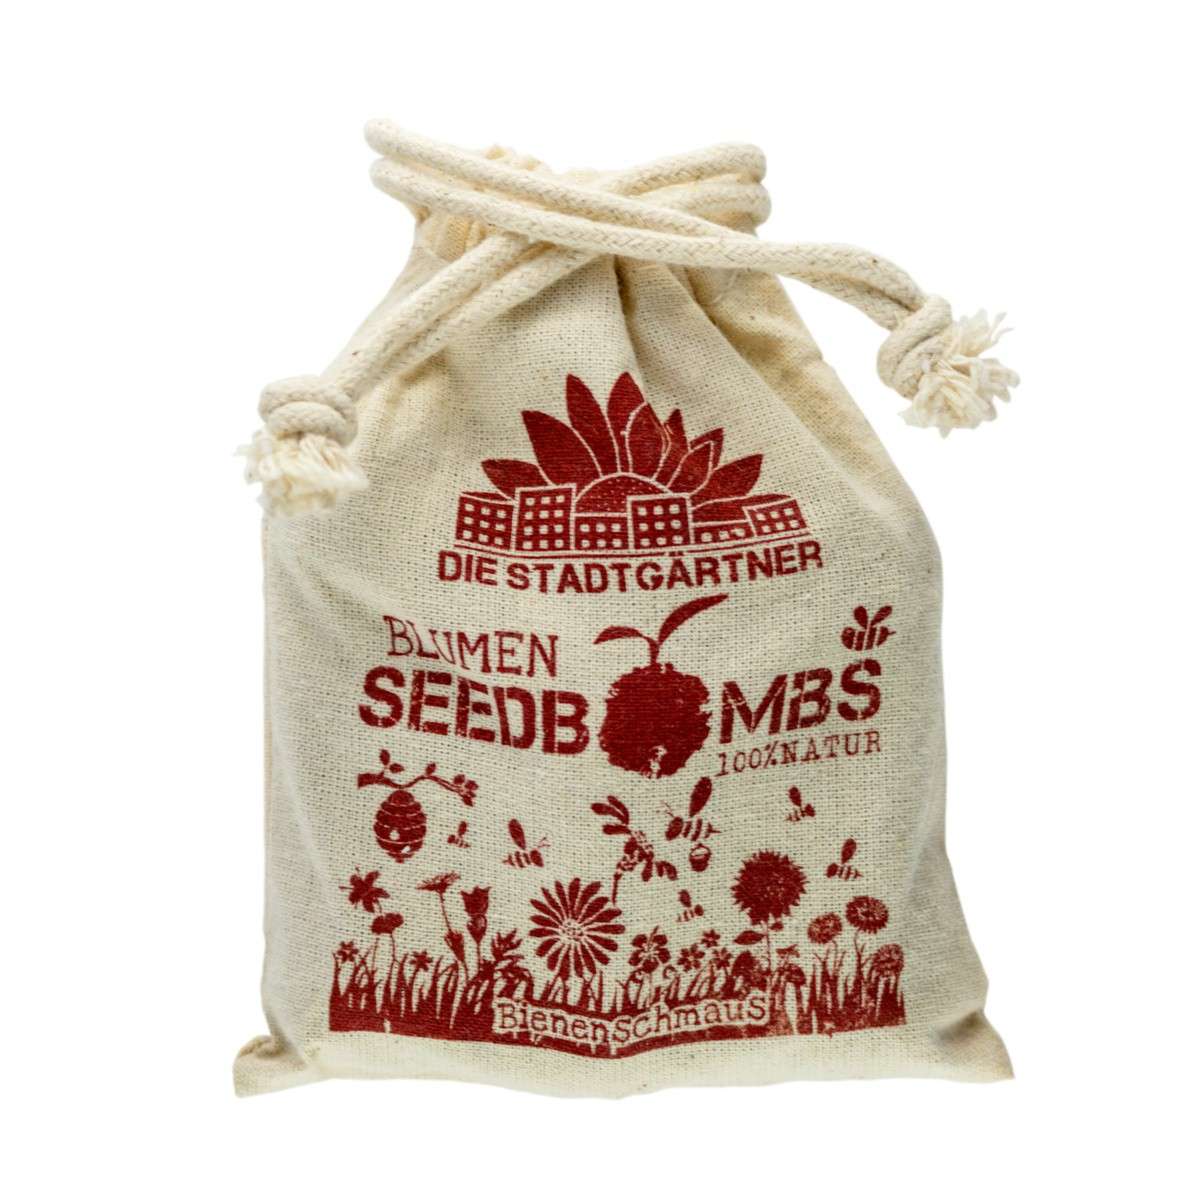 Die Stadtgärtner - Seedbombs linen bag set of 8 - Bees Feast (1)